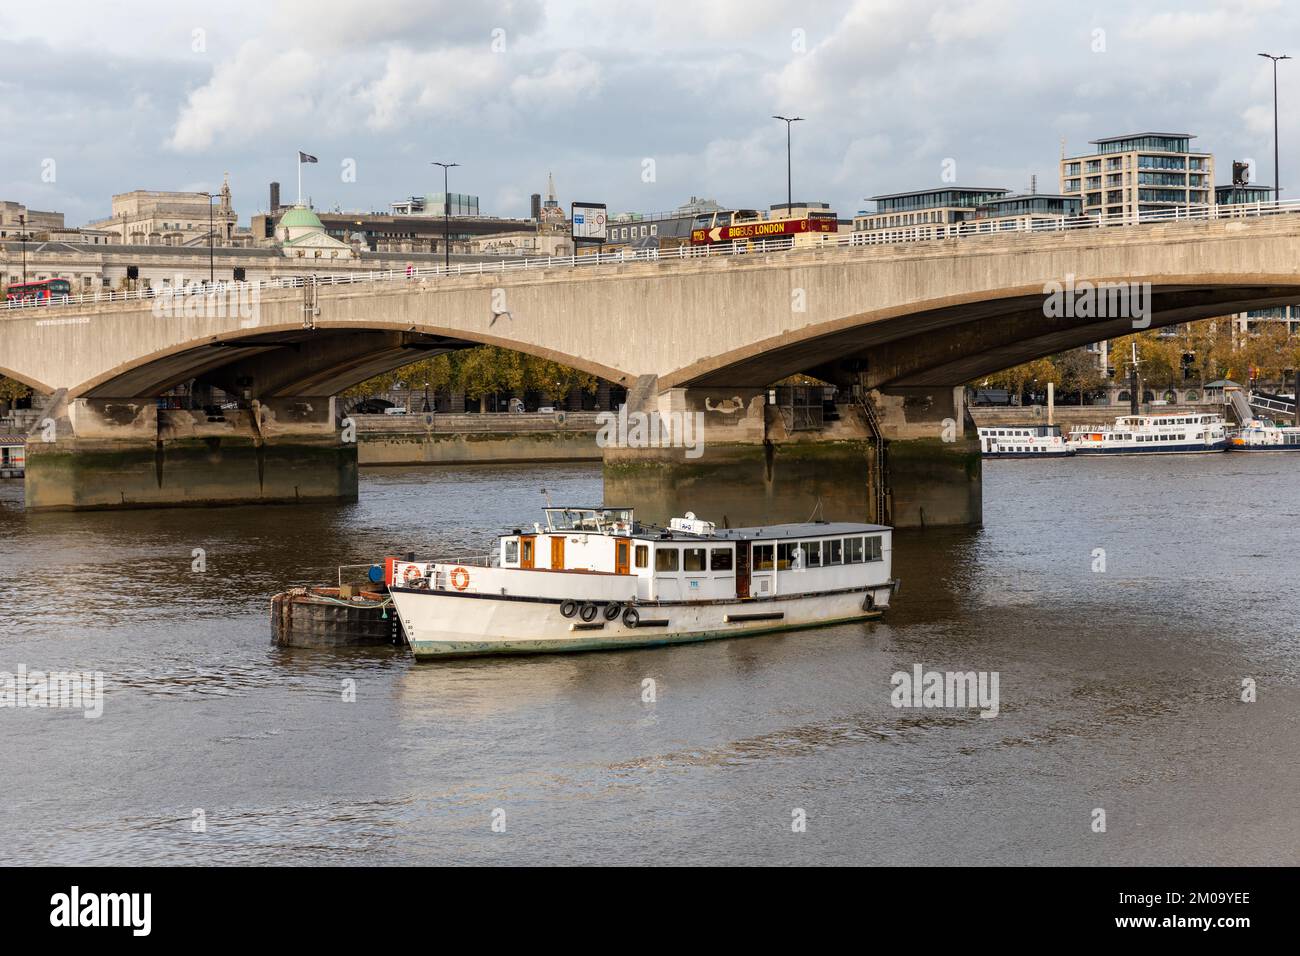 Una barca fluviale sul Tamigi naviga sotto il Ponte di Waterloo mentre un autobus turistico passa lungo il ponte. In lontananza ci sono altre barche fluviali. Foto Stock